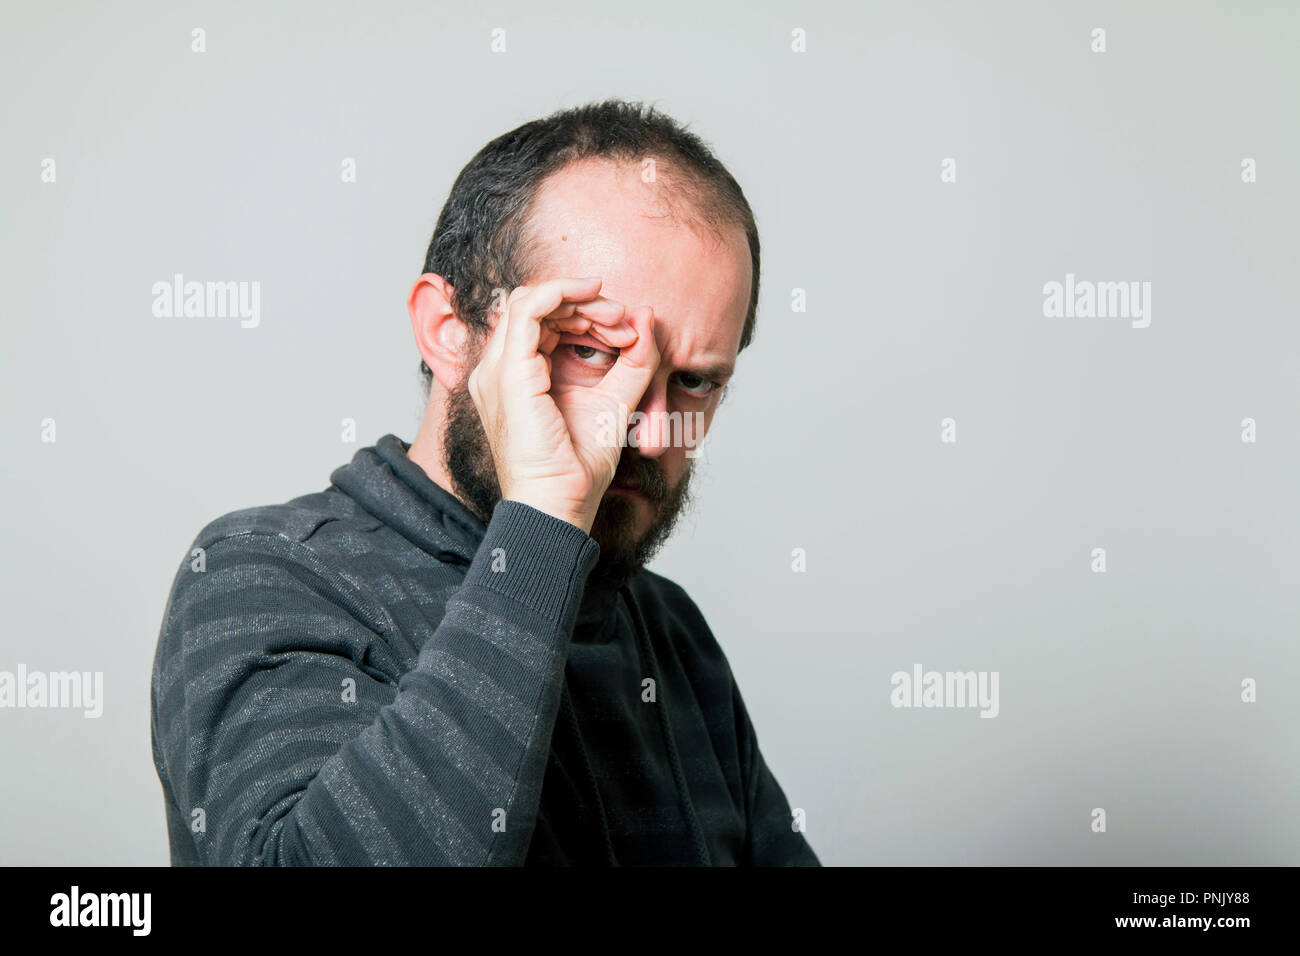 Shocked man looking through hands, making binoculars Stock Photo